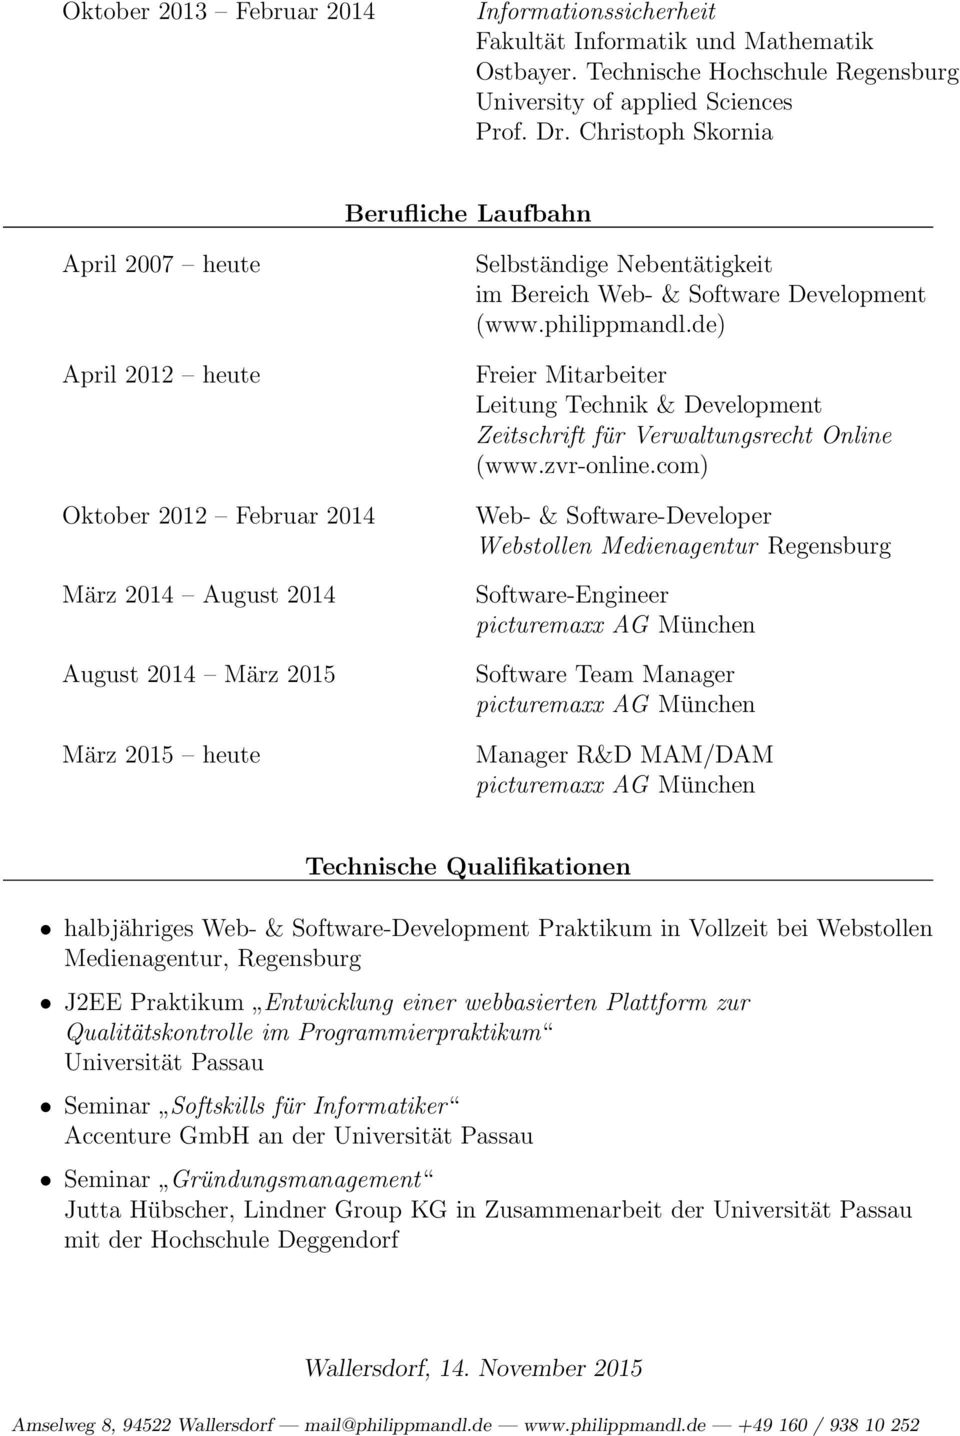 Web- & Software Development (www.philippmandl.de) Freier Mitarbeiter Leitung Technik & Development Zeitschrift für Verwaltungsrecht Online (www.zvr-online.